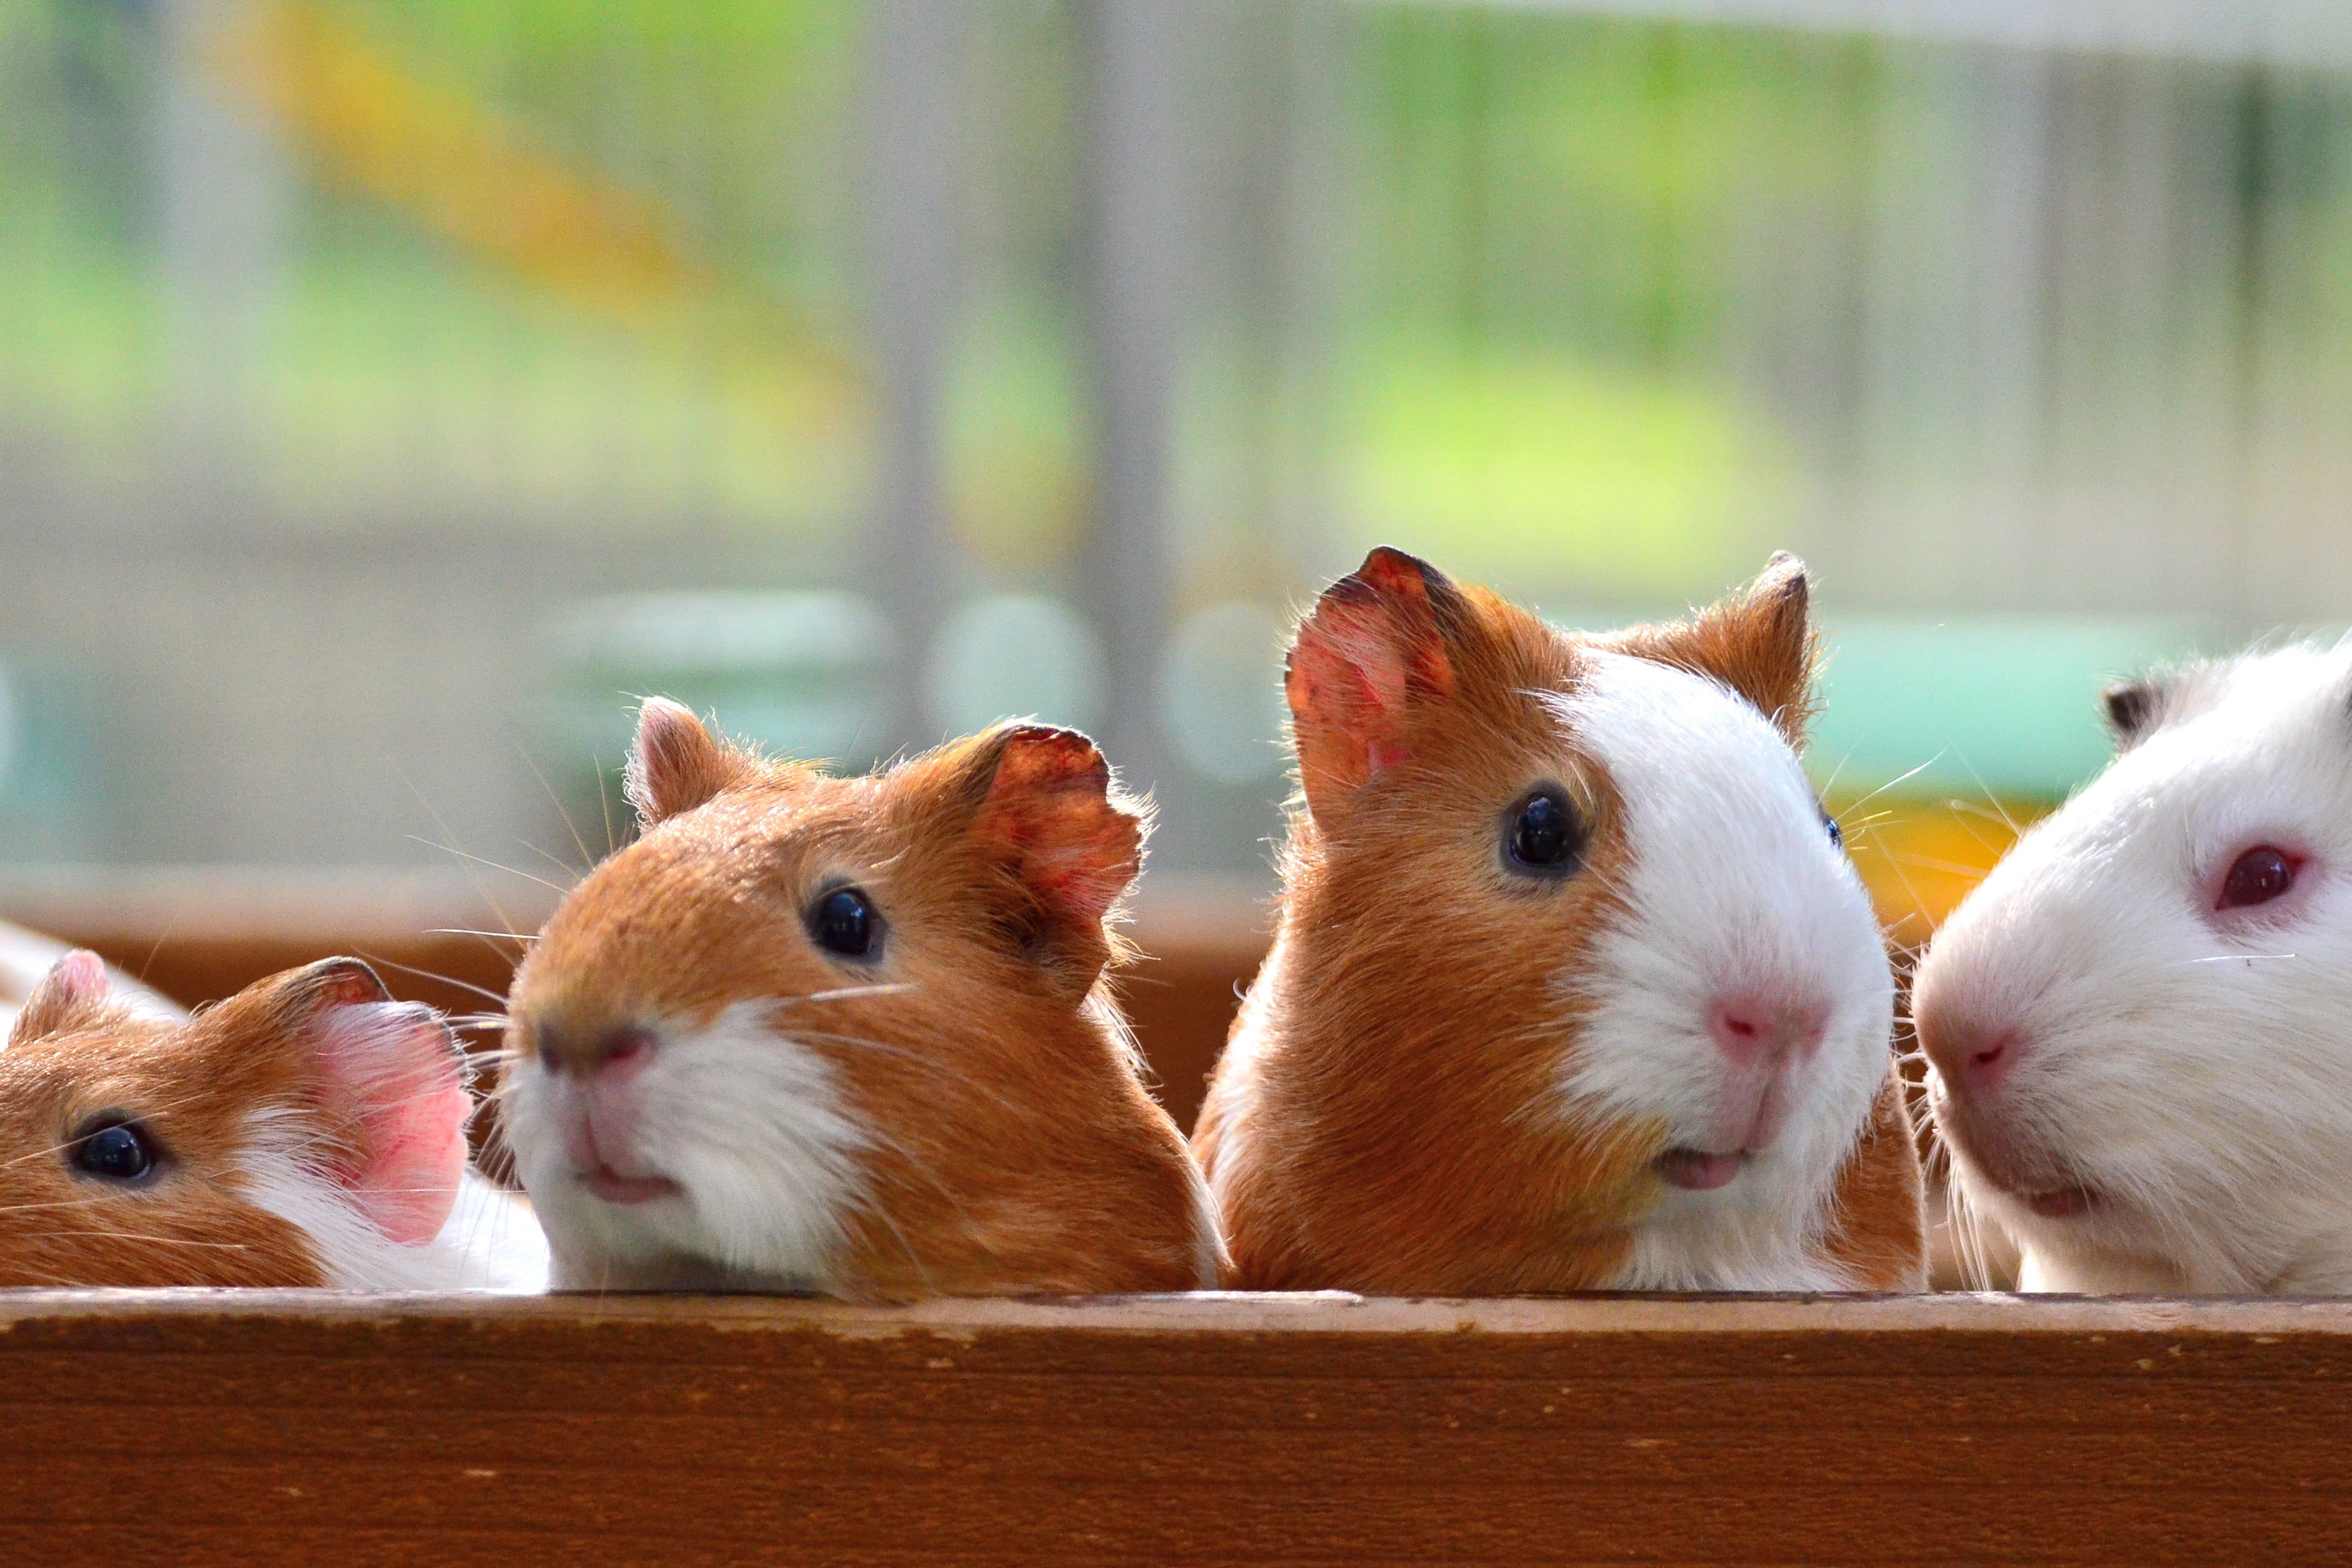  دانلود تصویر بسیار زیبا و جالب از خوکچه های قشنگ 